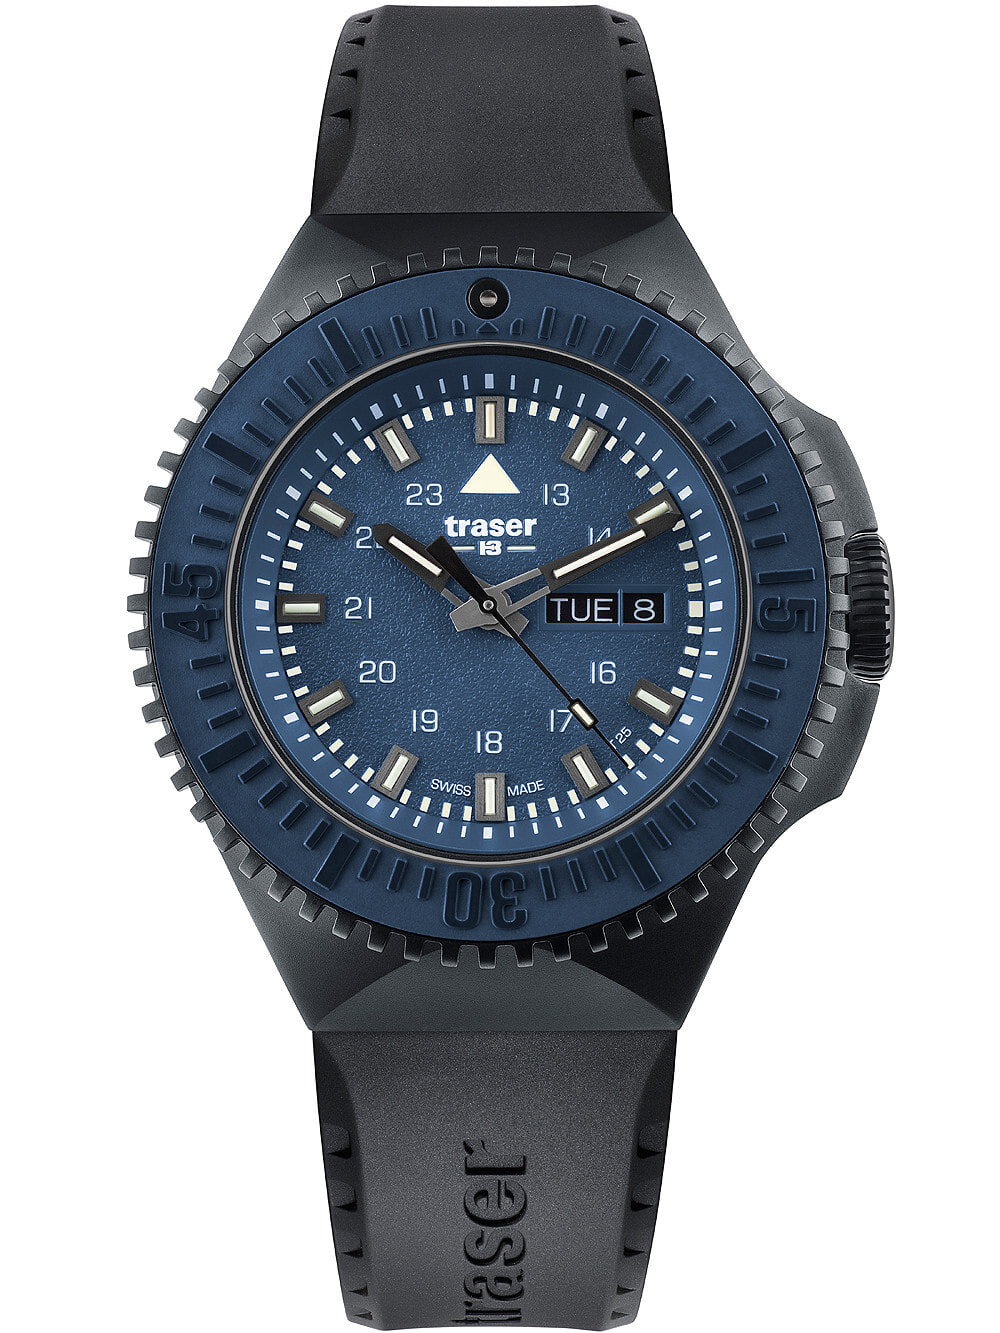 Мужские наручные часы с черным силиконовым ремешком  Traser H3 109857 P69 Black-Stealth Blue 46mm 20ATM